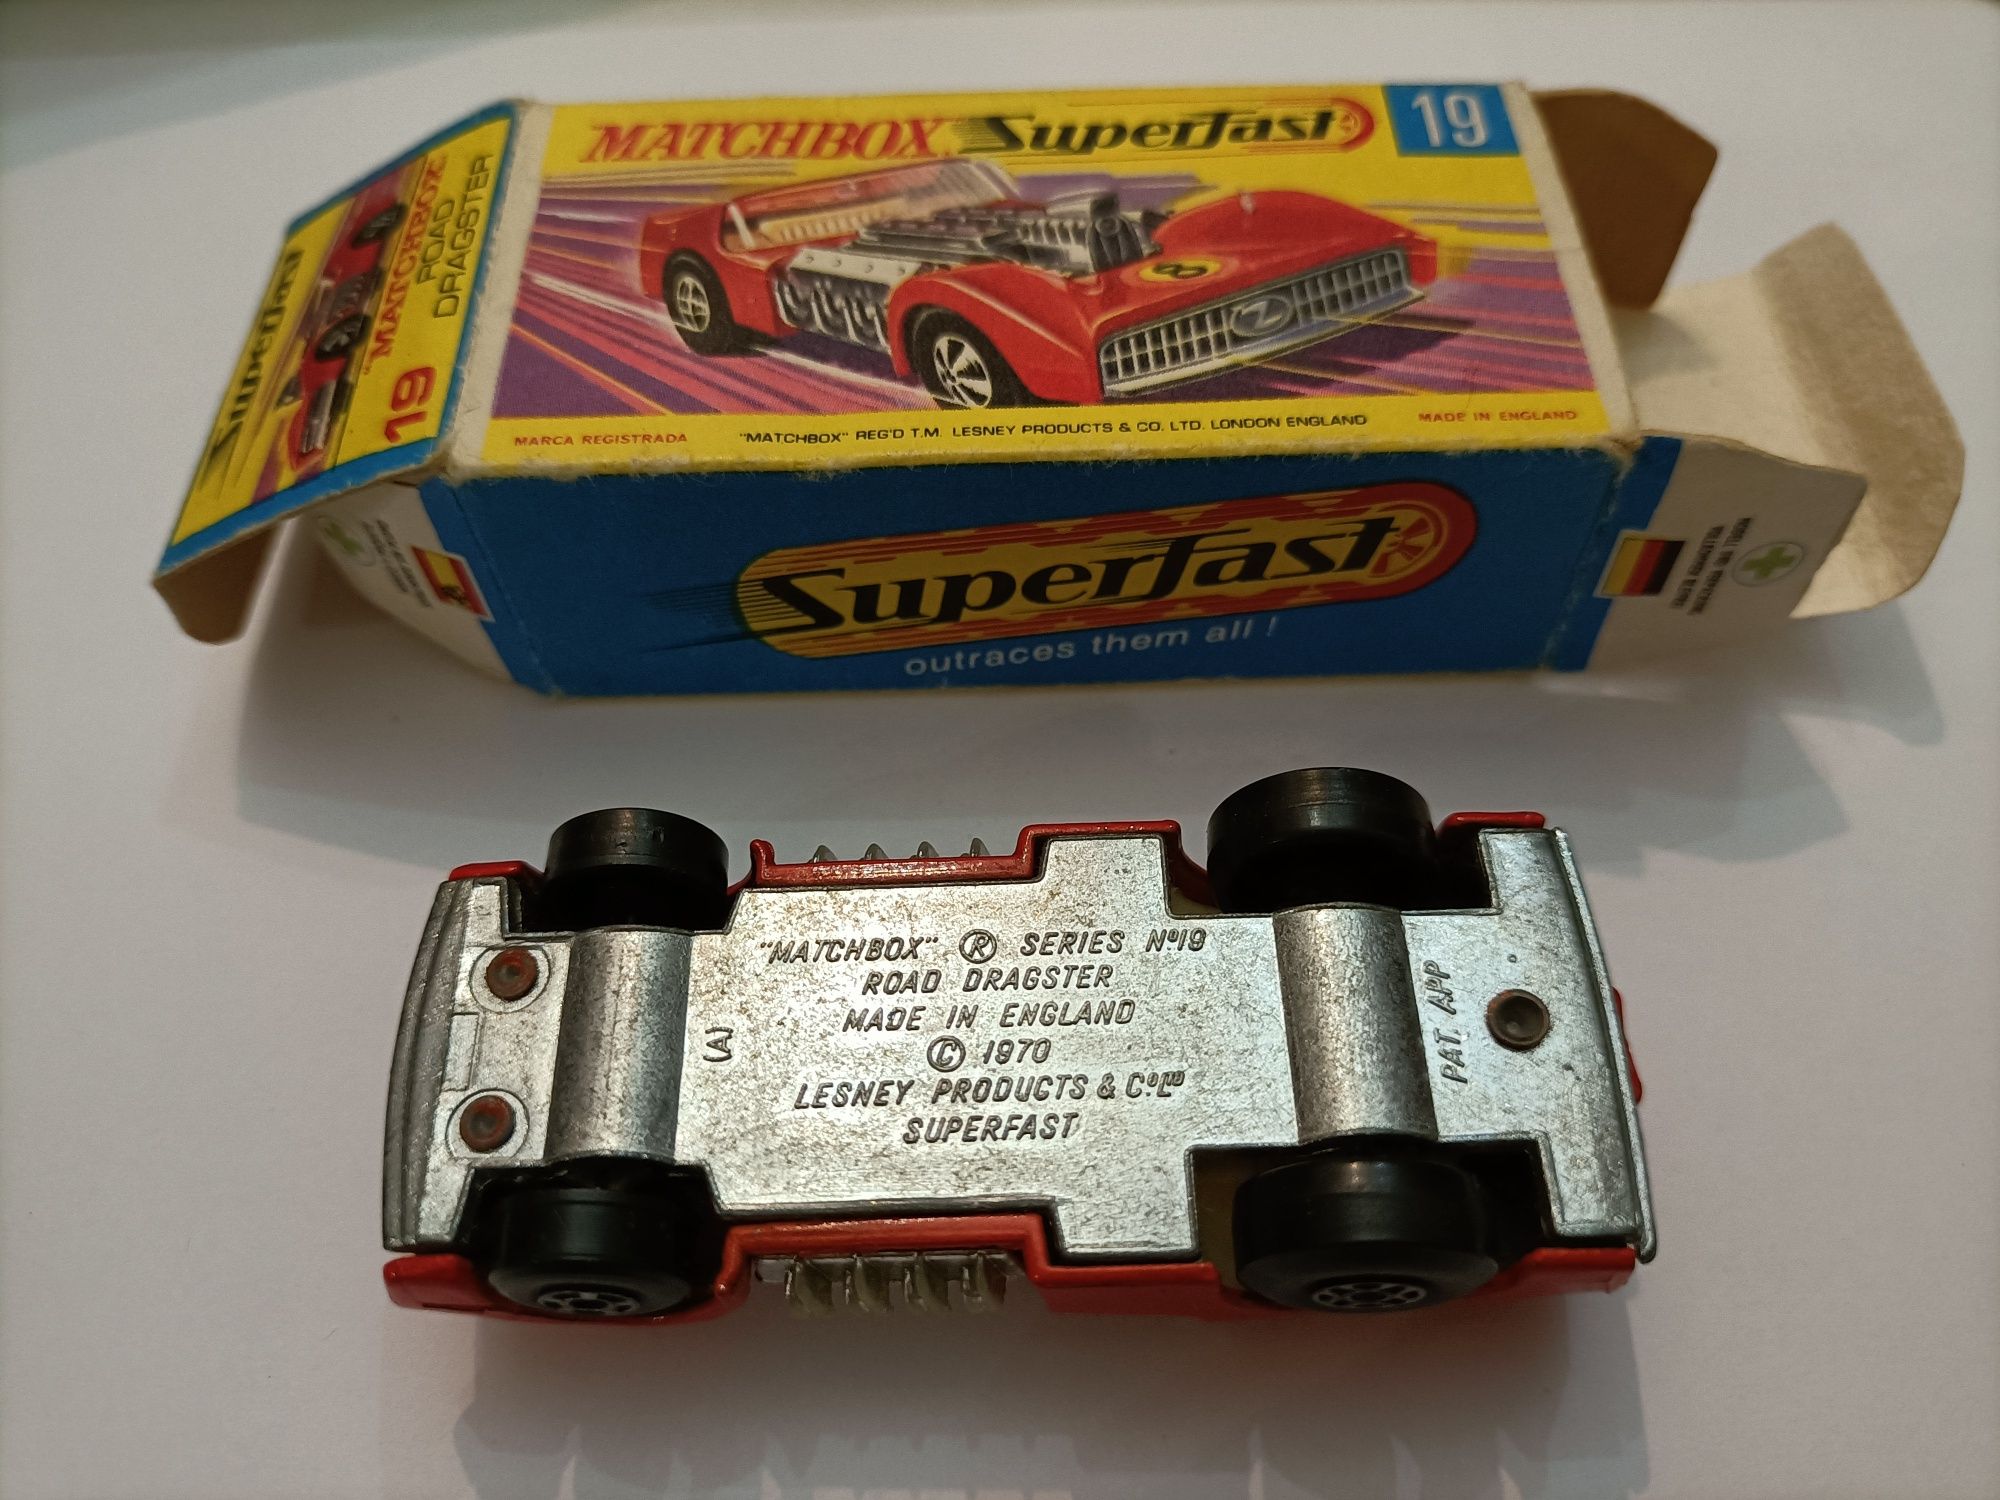 Matchbox Superfast, Road Drasgster, n° 19 de 1970, com caixa reparada